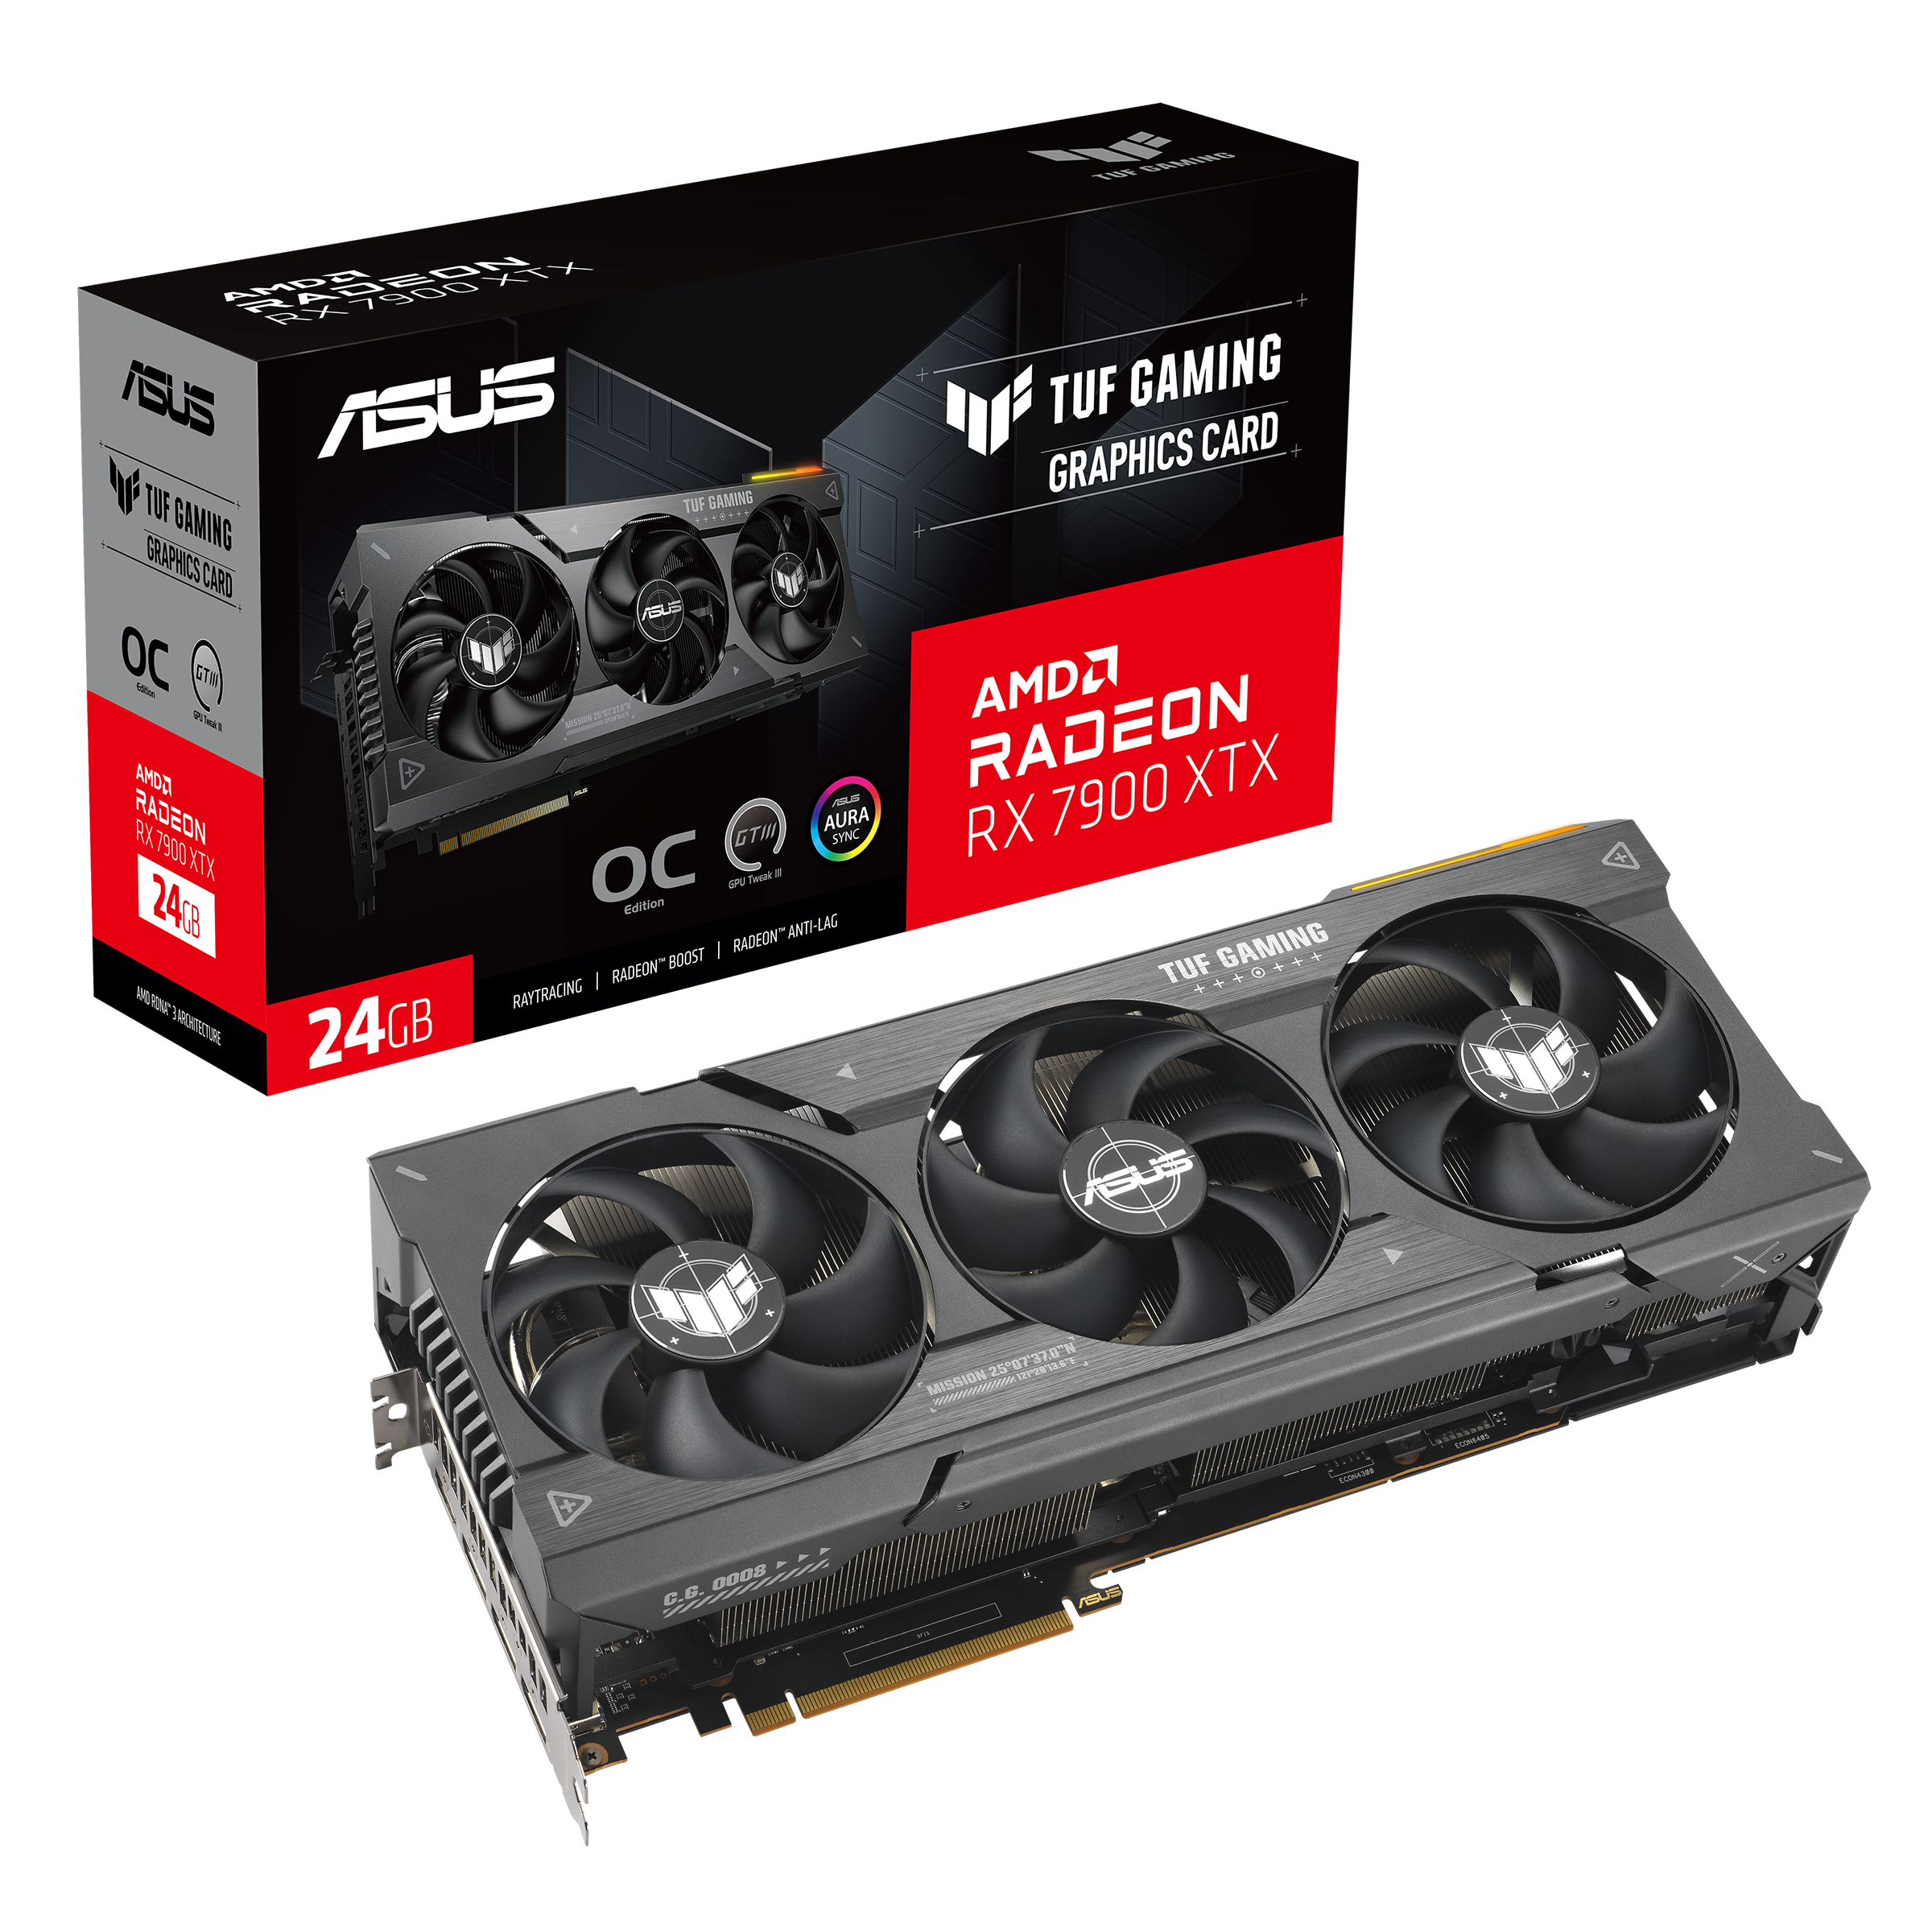 AMD Radeon RX 7900 XTX Specs